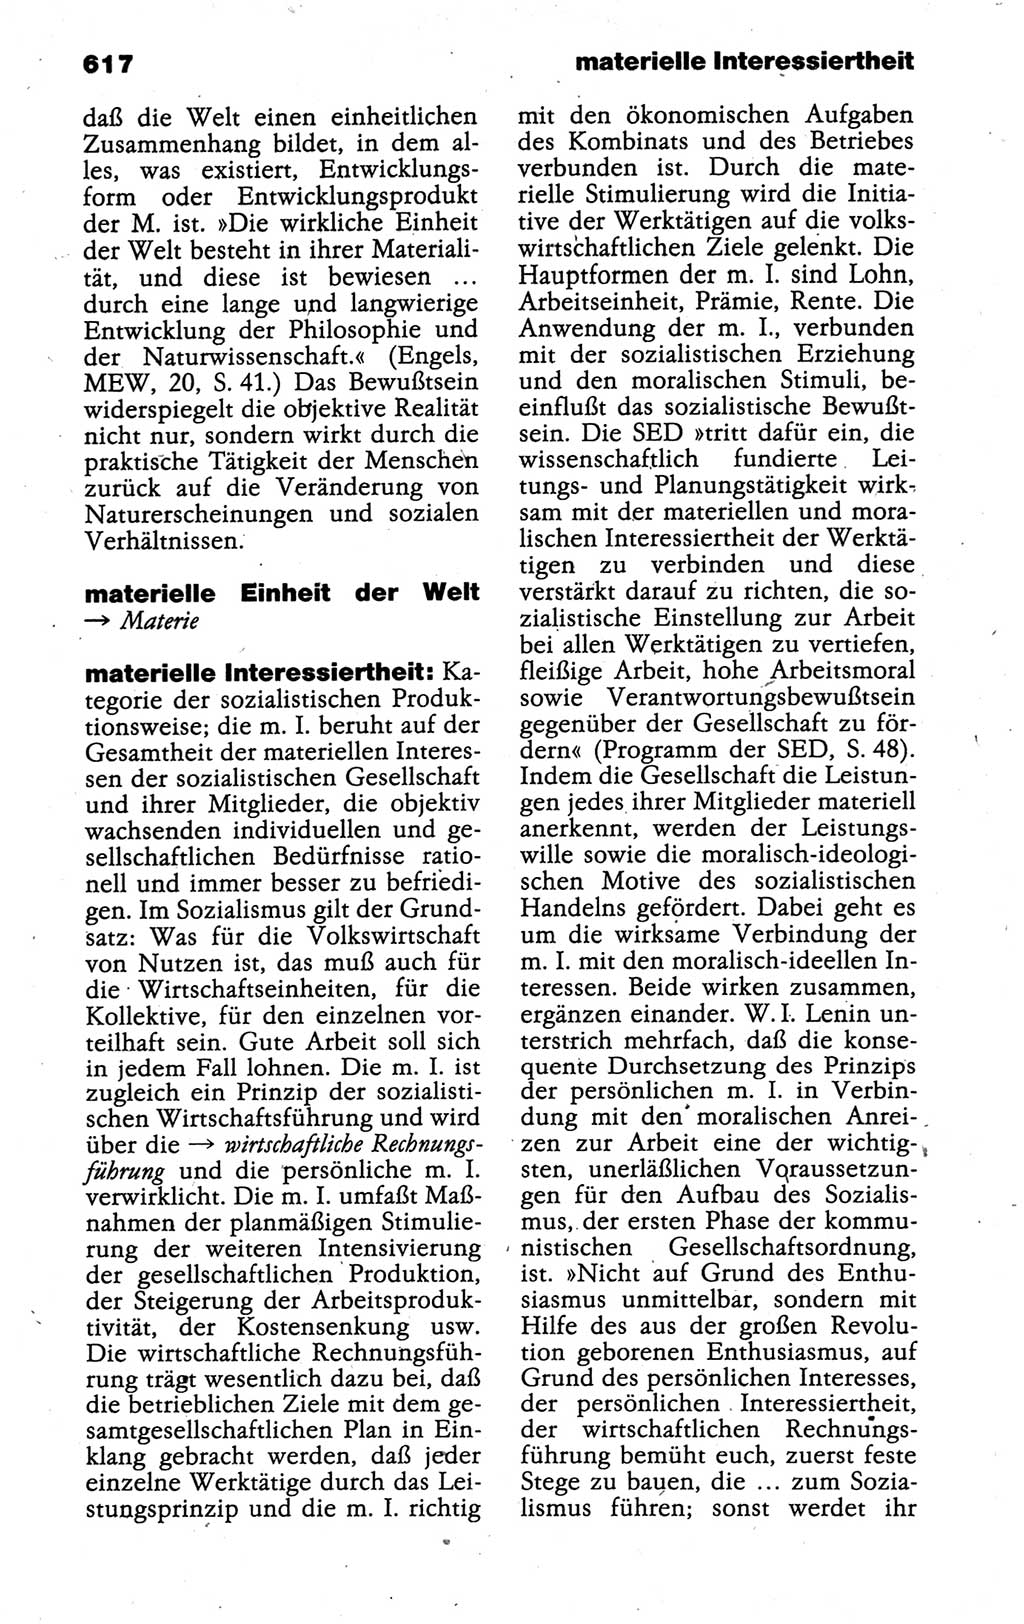 Kleines politisches Wörterbuch [Deutsche Demokratische Republik (DDR)] 1988, Seite 617 (Kl. pol. Wb. DDR 1988, S. 617)